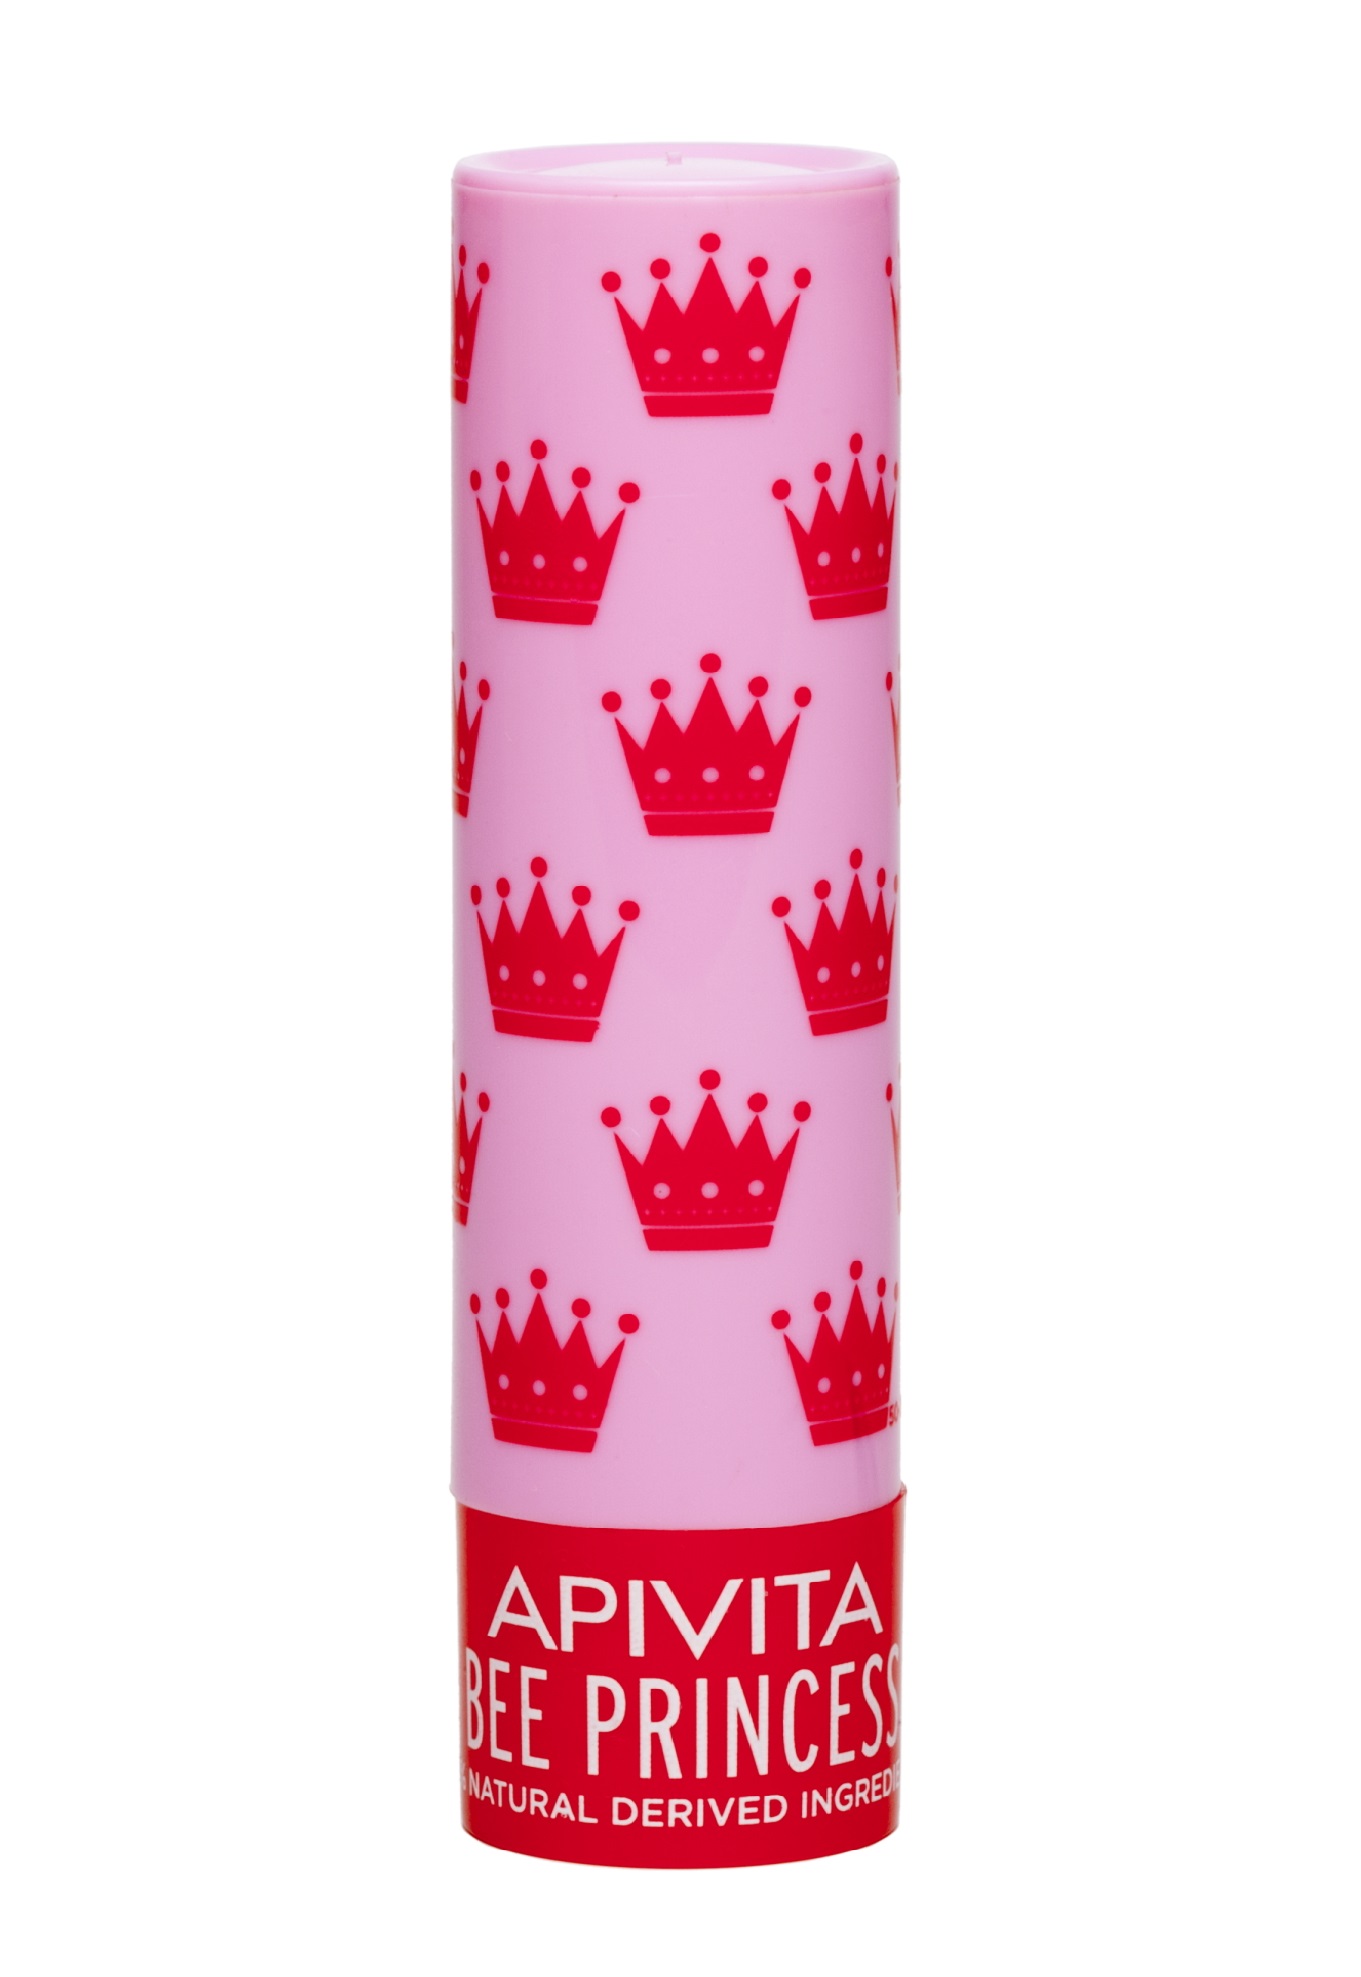 Apivita Уход для губ Принцесса Пчела Био, 4,4 г (Apivita, Li